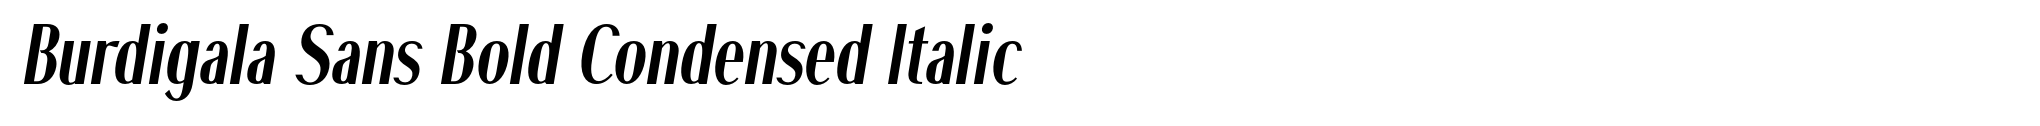 Burdigala Sans Bold Condensed Italic image